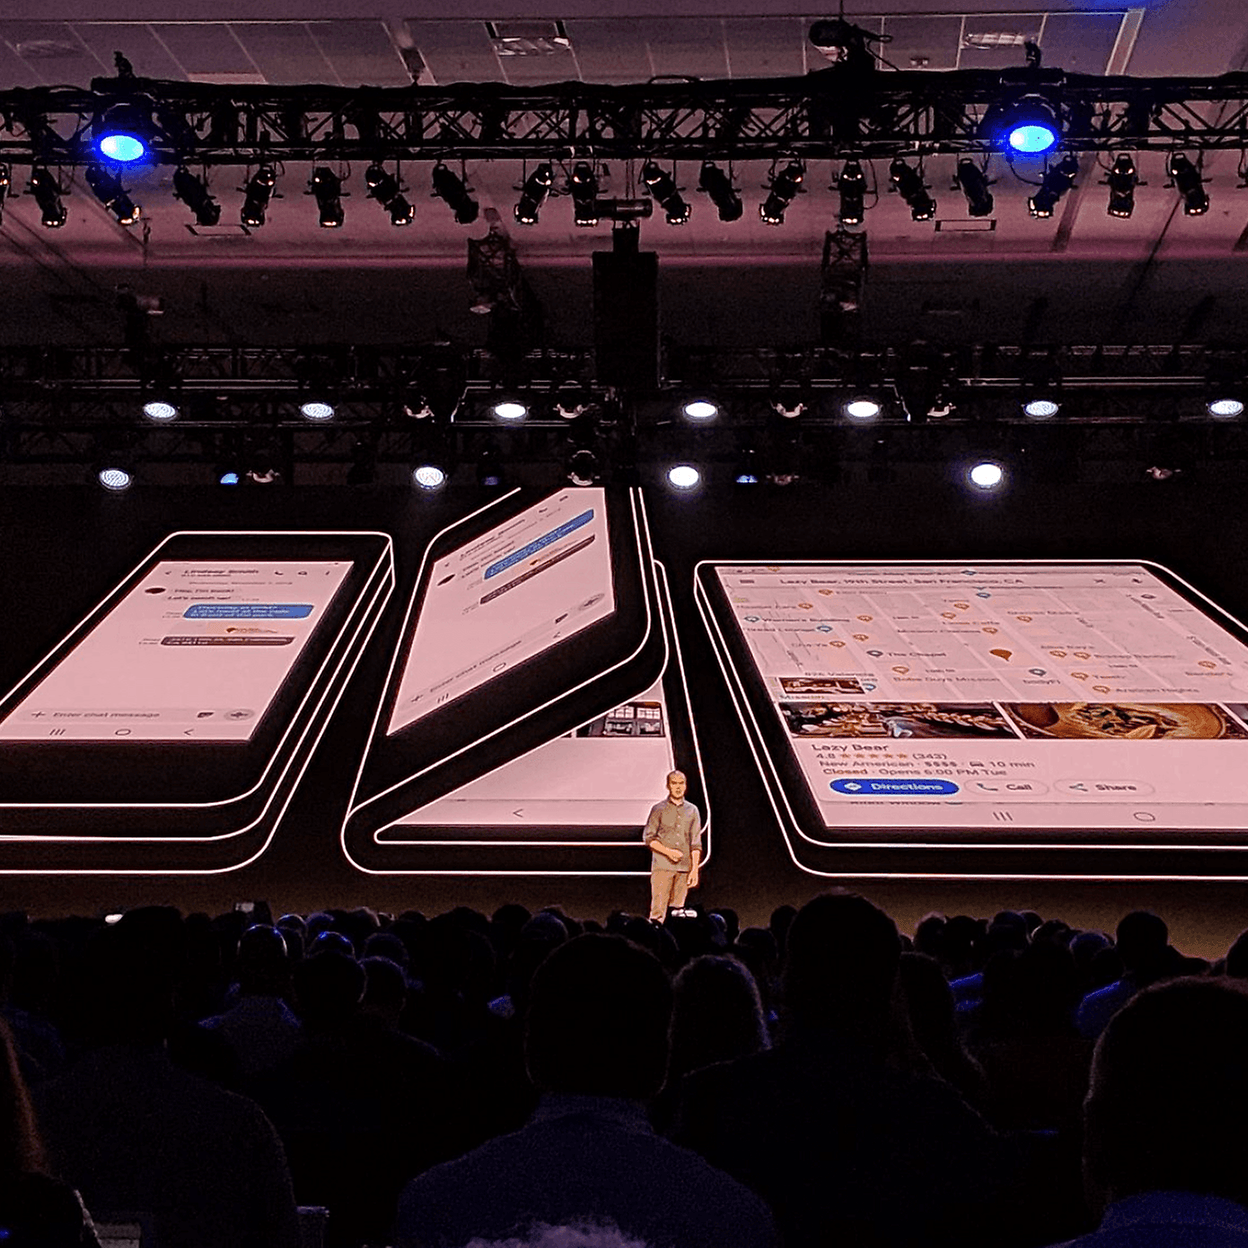 Infinity Flex Display e One UI: Samsung apresenta interface futurista e  tela dobrável